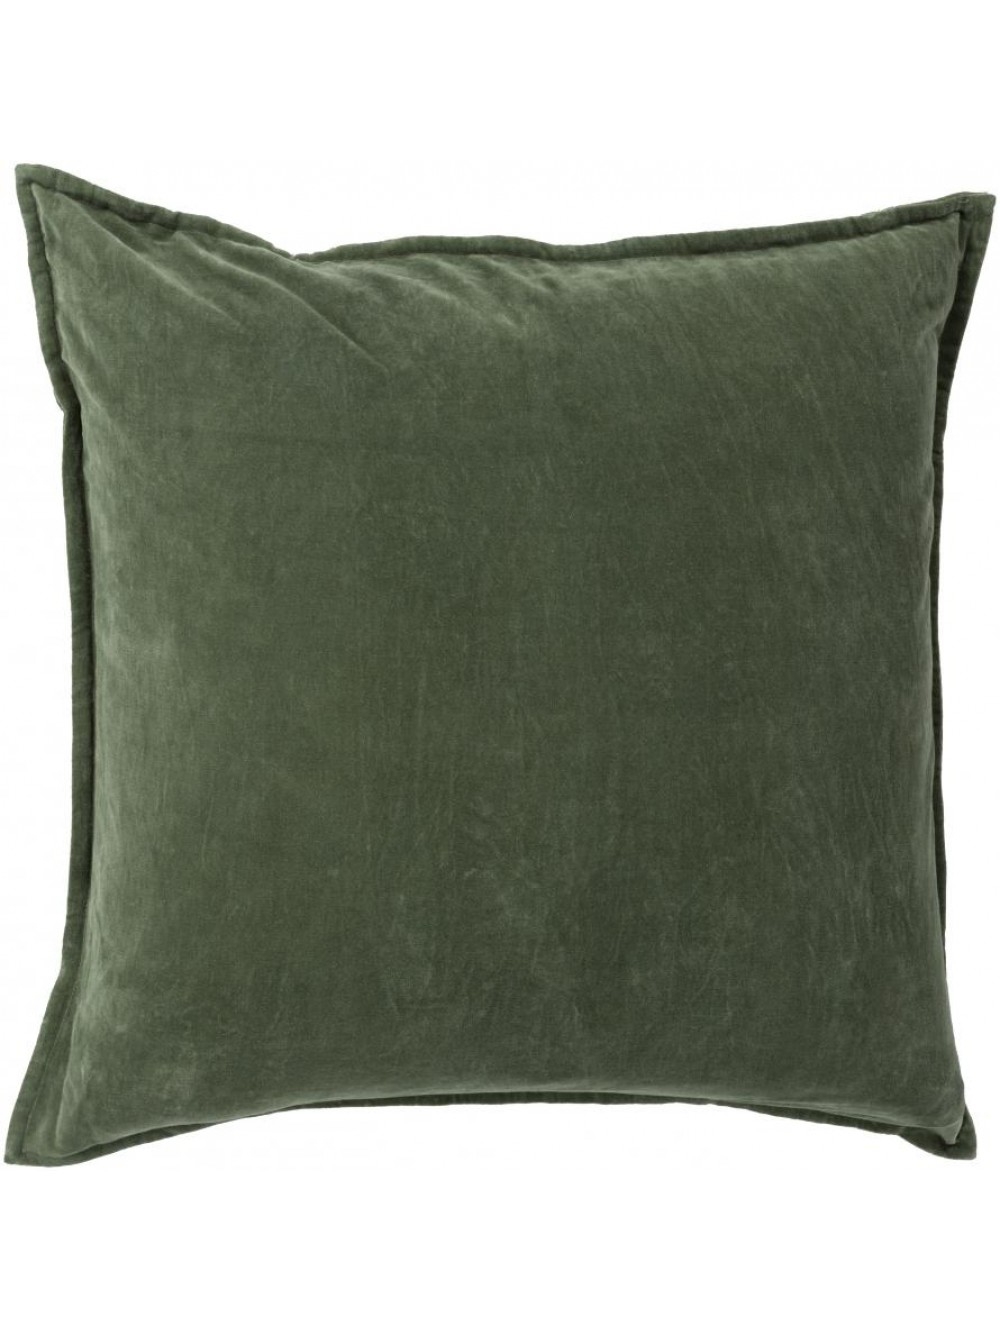 Maxen Pillow -  Dark Moss  - 18" x 18" - Polyester Filled - Image 0